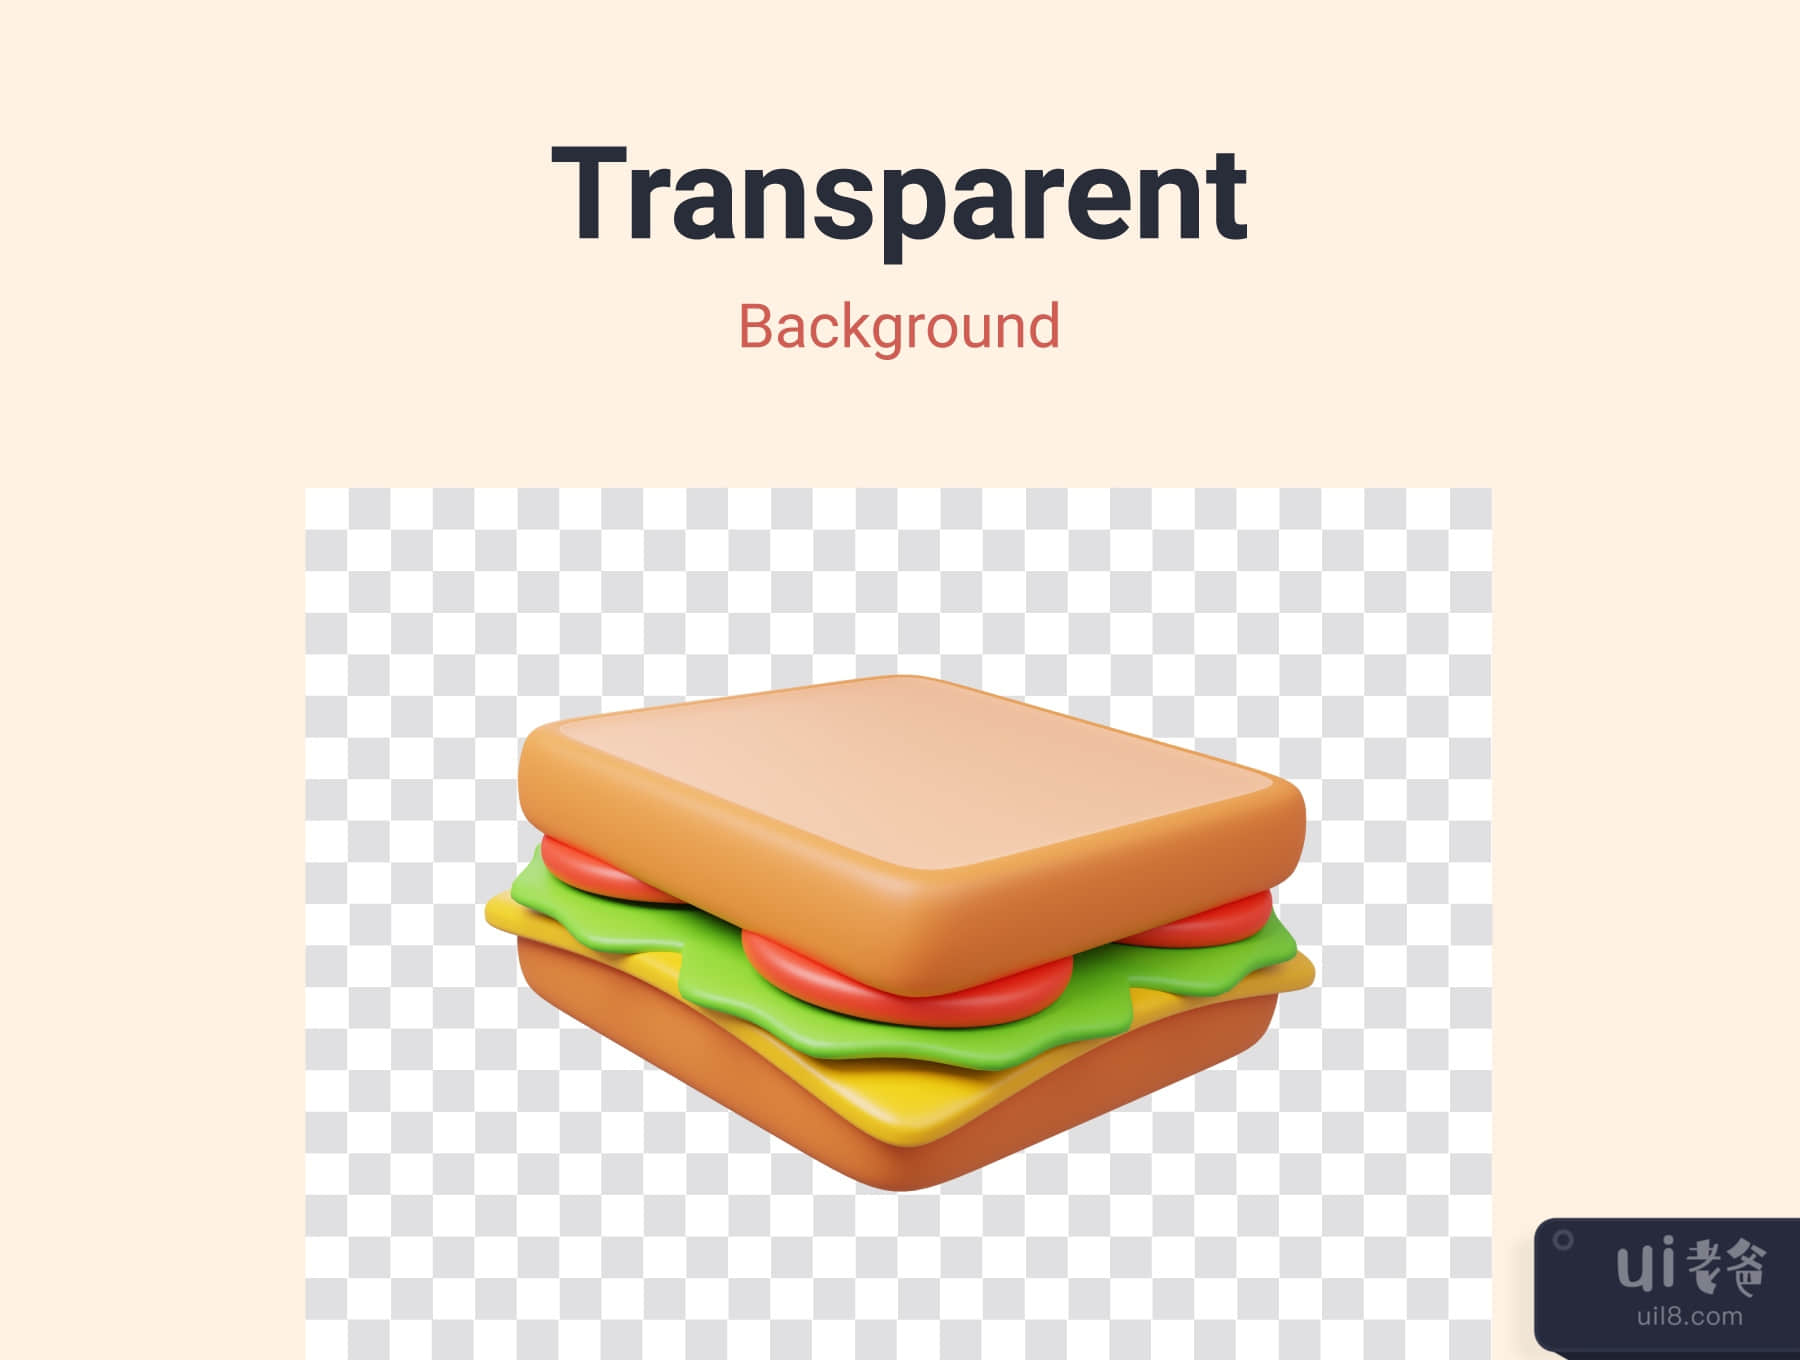 食品和饮料3D图标包 (Food and Drink 3D Icon Pack)插图3